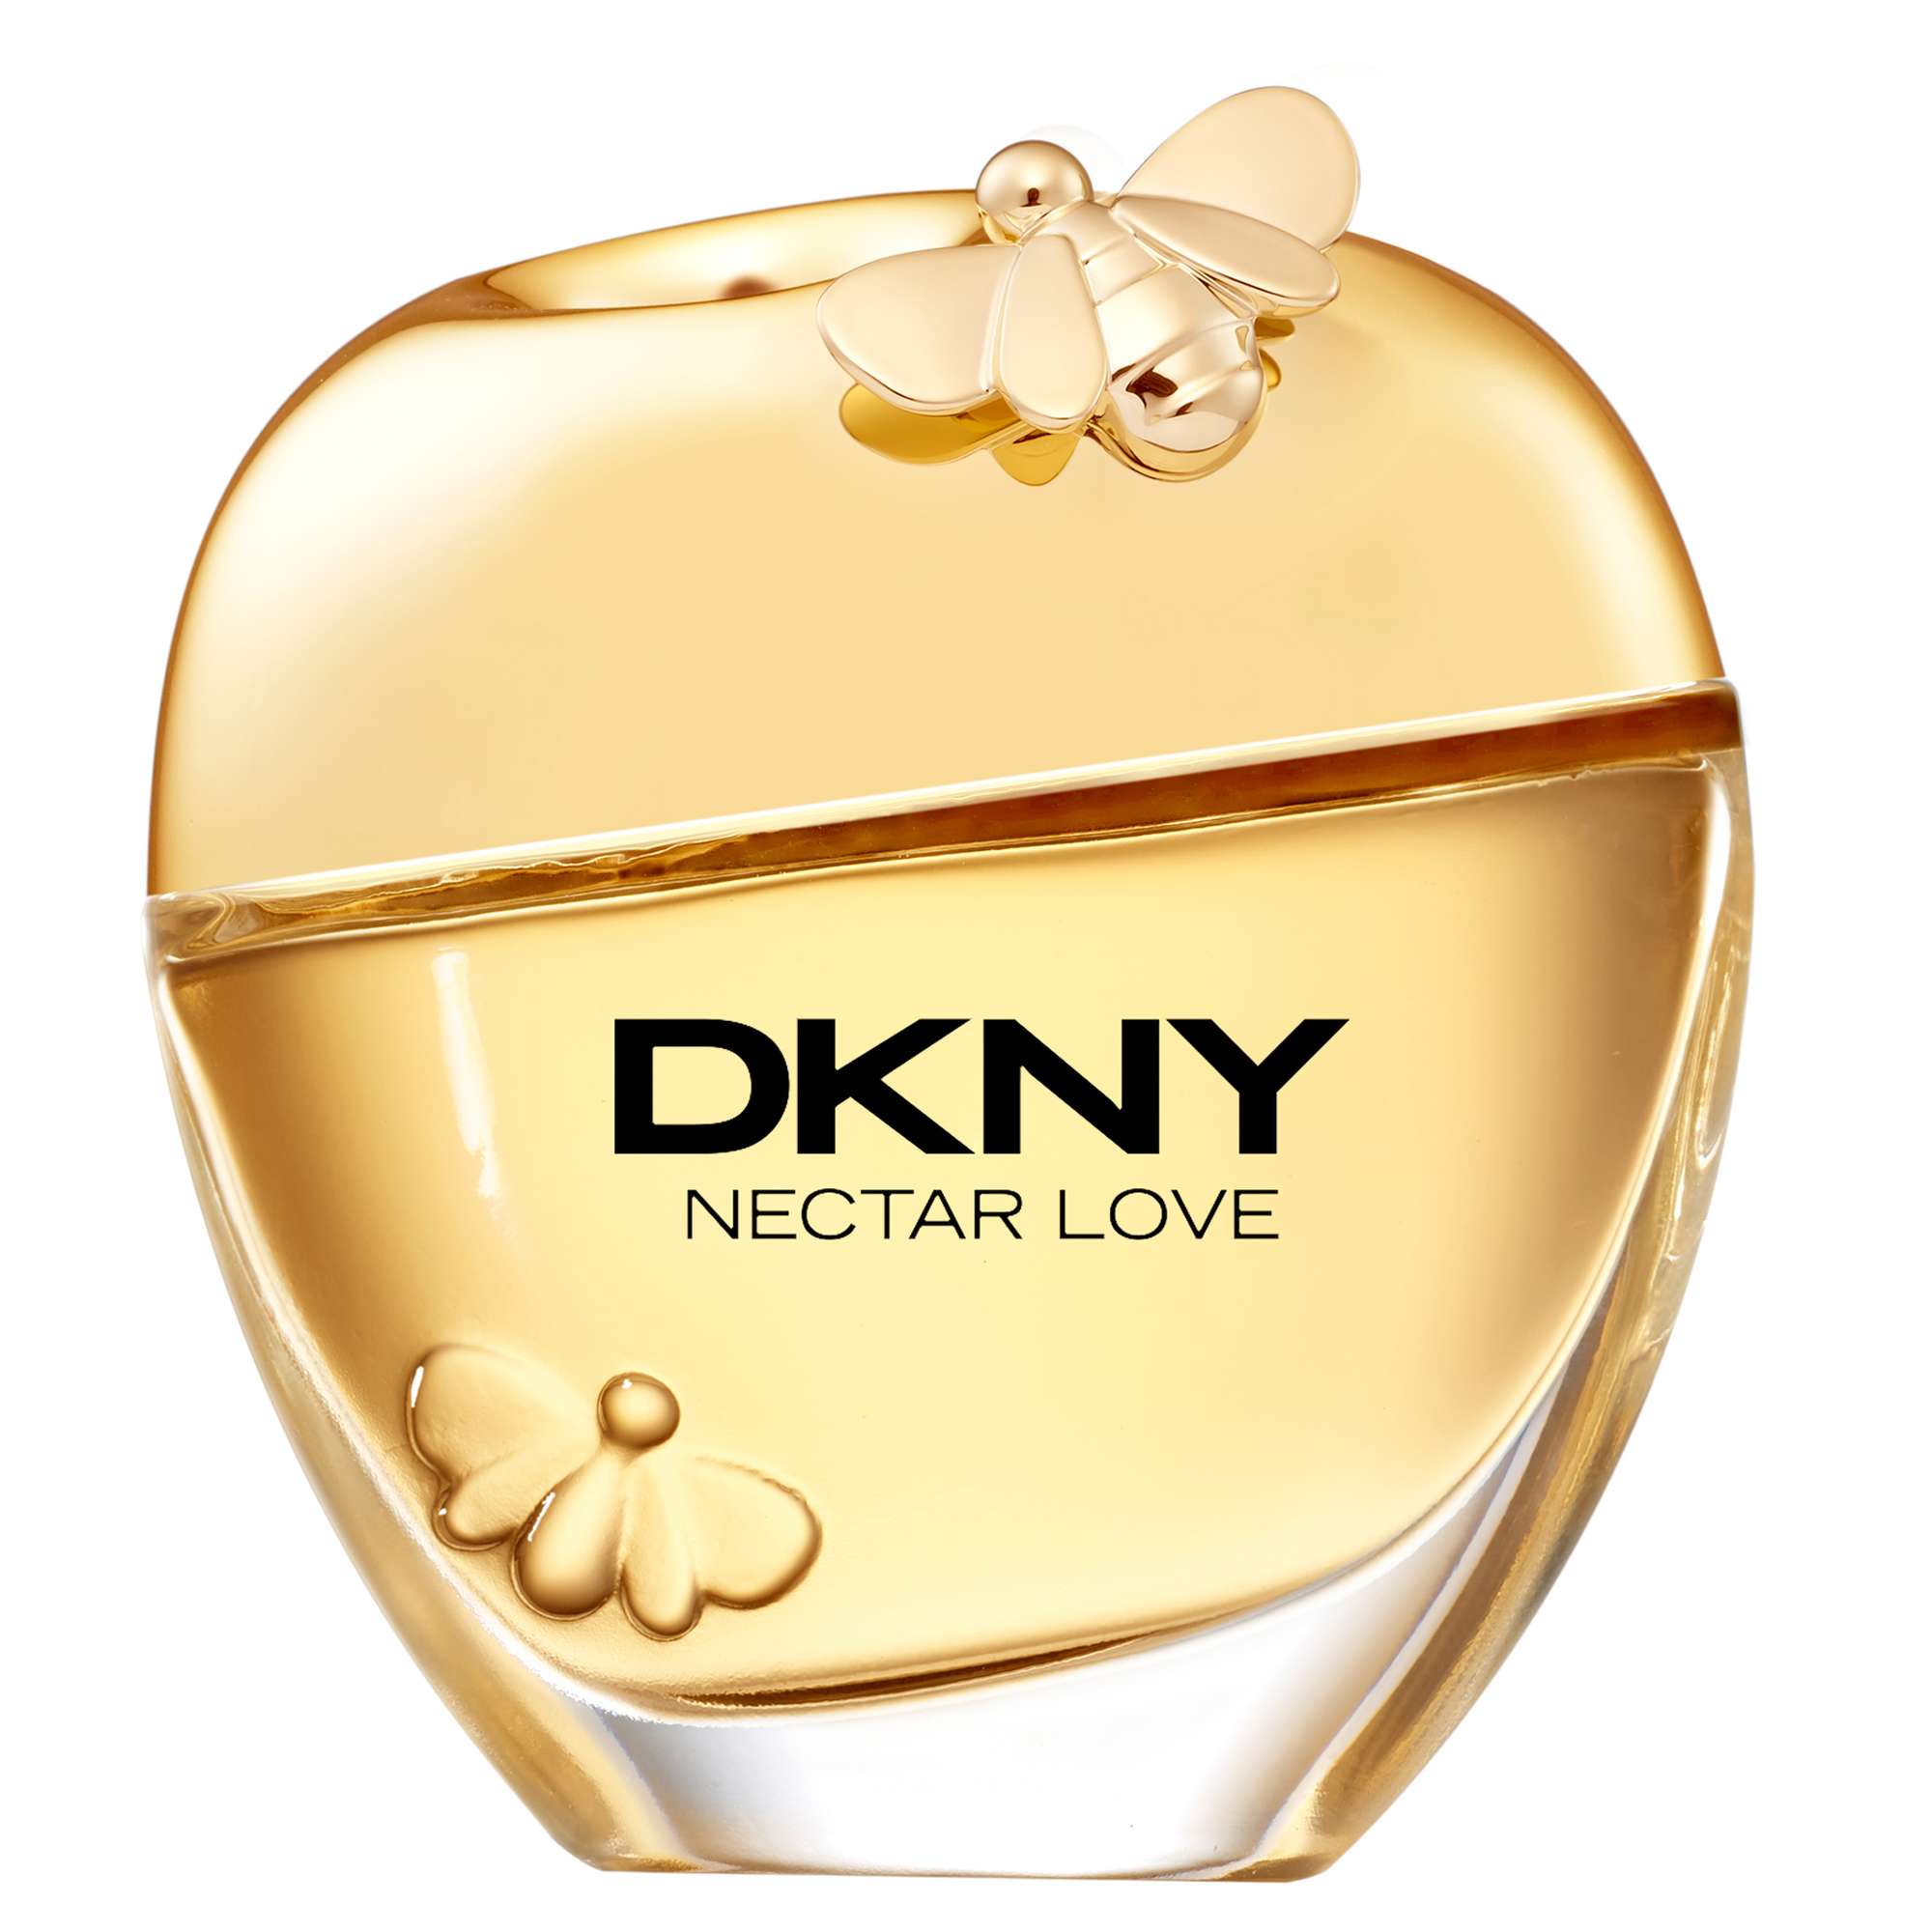 DKNY Nectar Love Eau de Parfum Spray 100ml